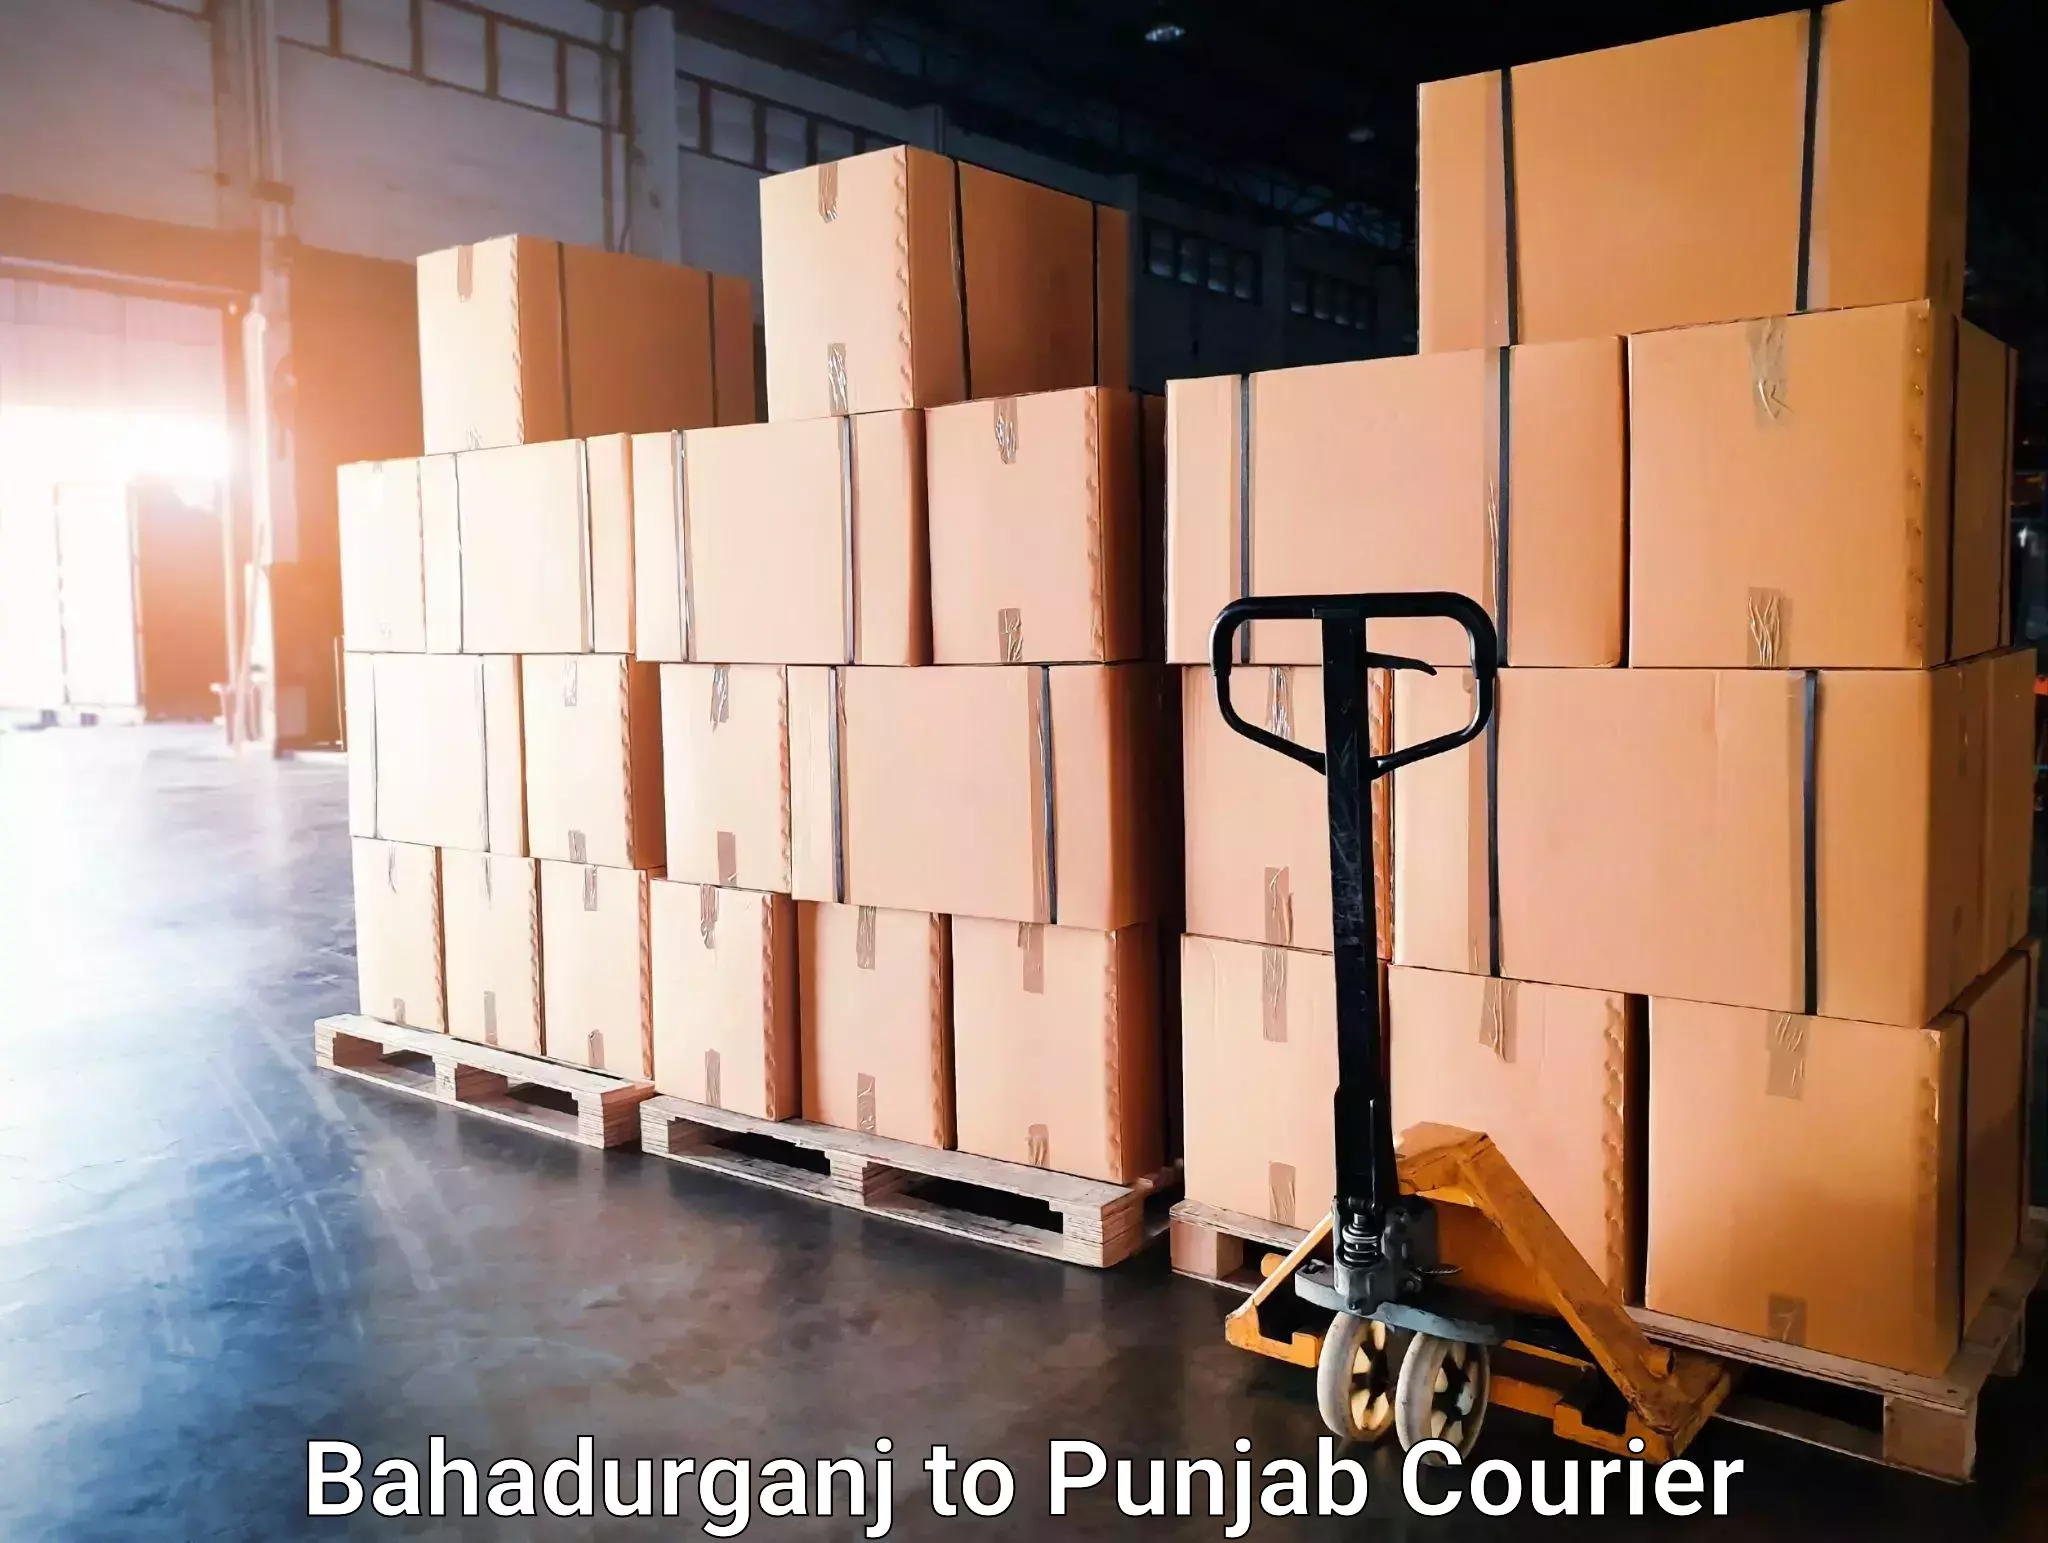 Customized relocation services Bahadurganj to Punjab